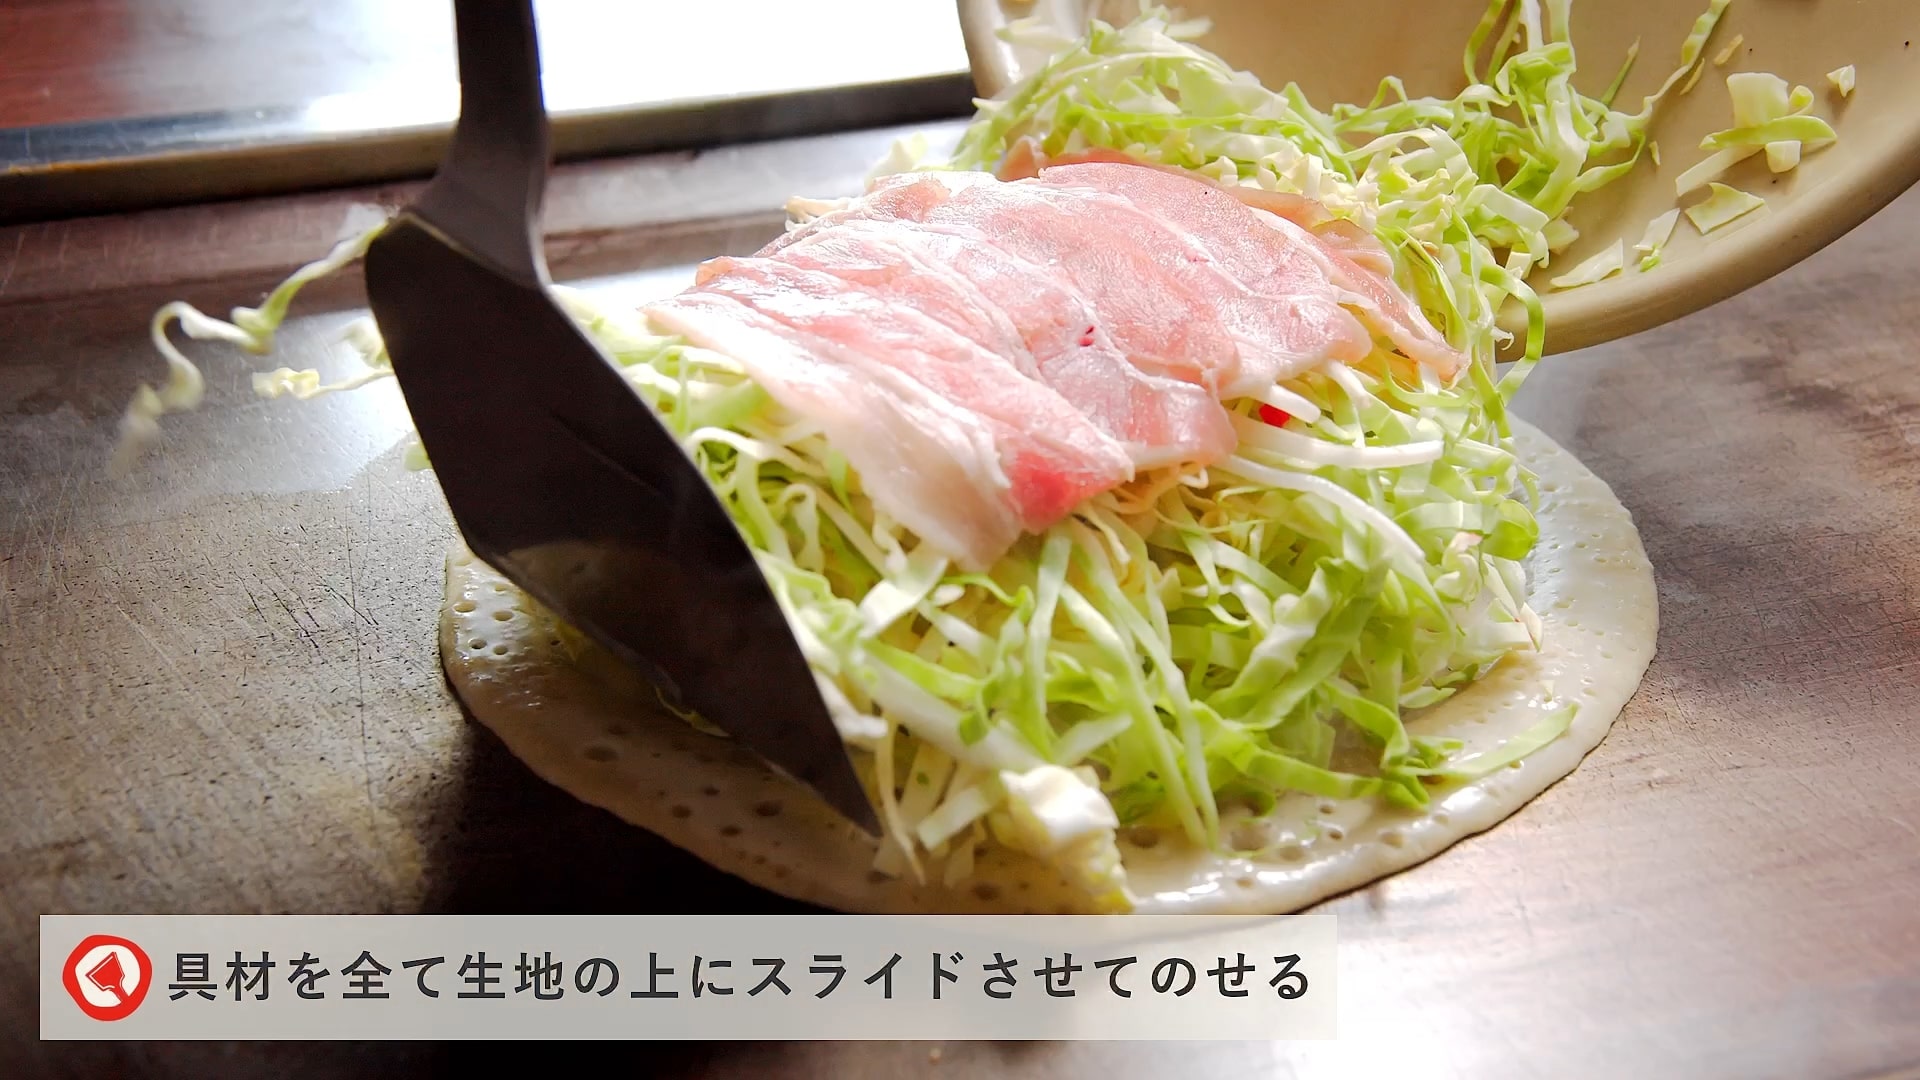 Fugetsu recipe movie